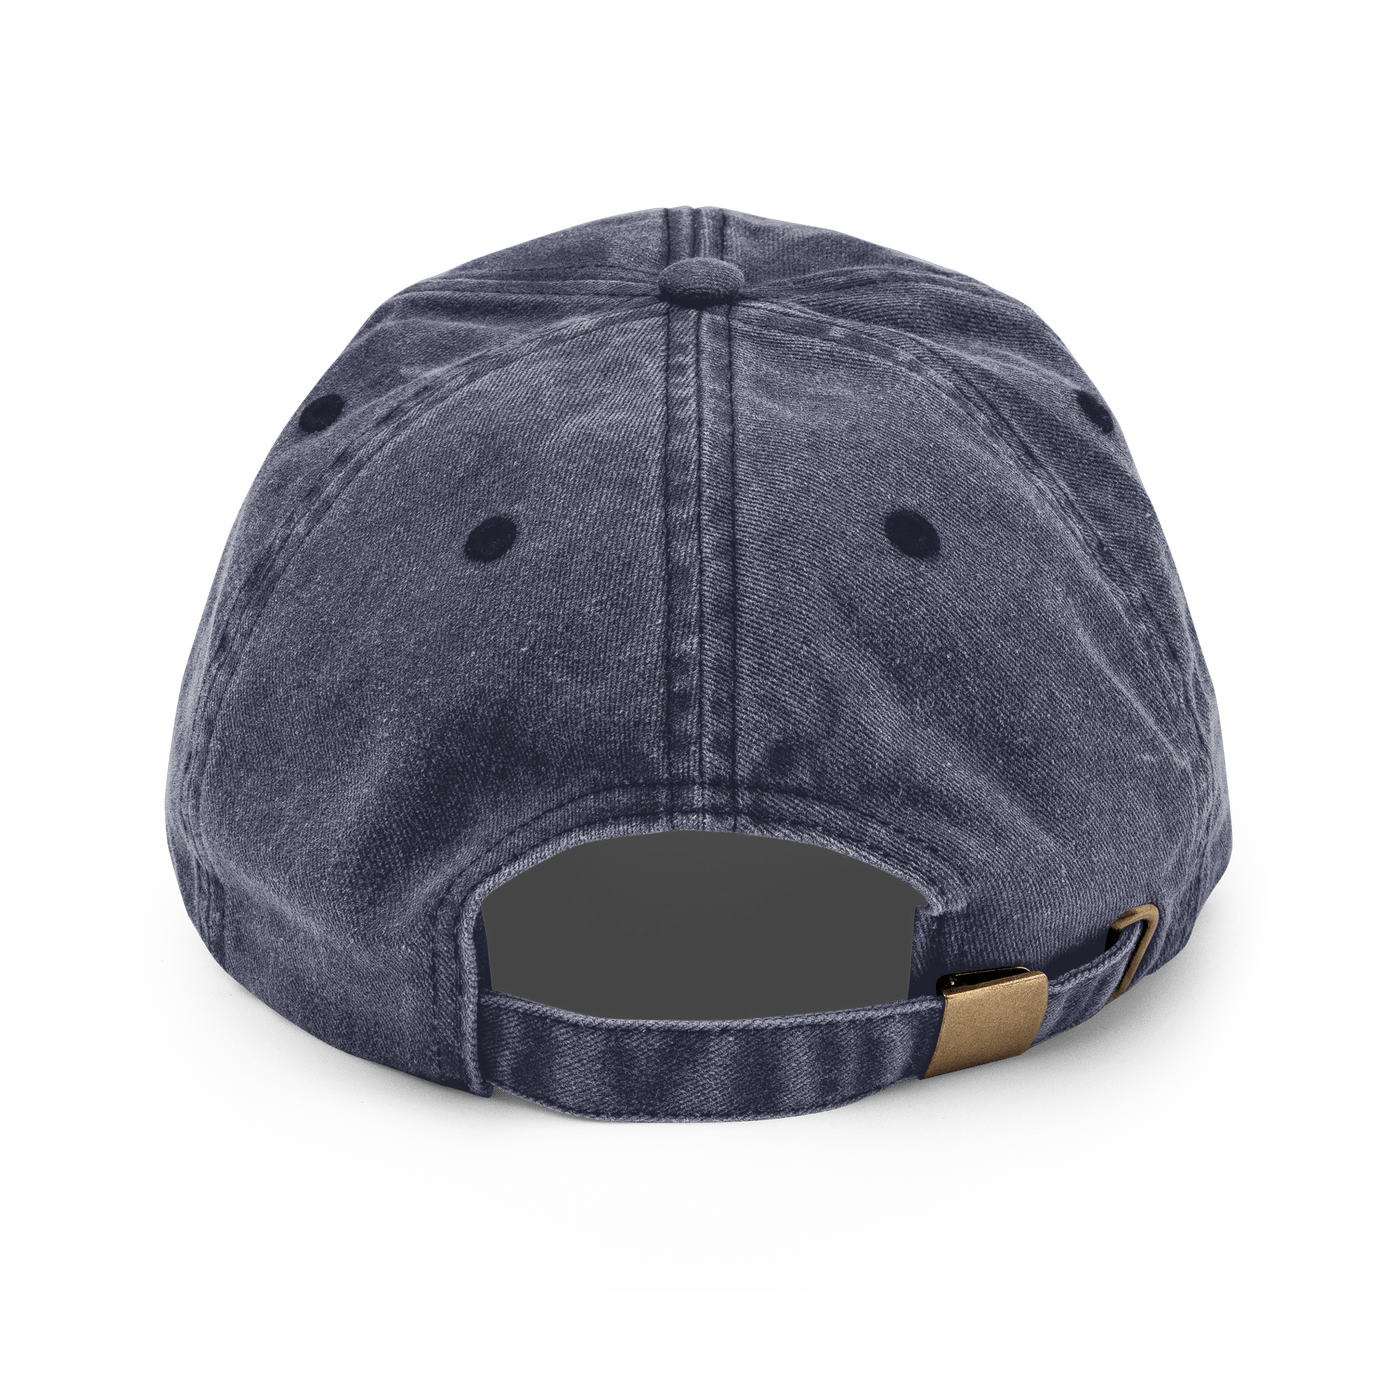 Stockholm Syndrome Vintage Hat - Vintage Denim - - Just Another Cap Store